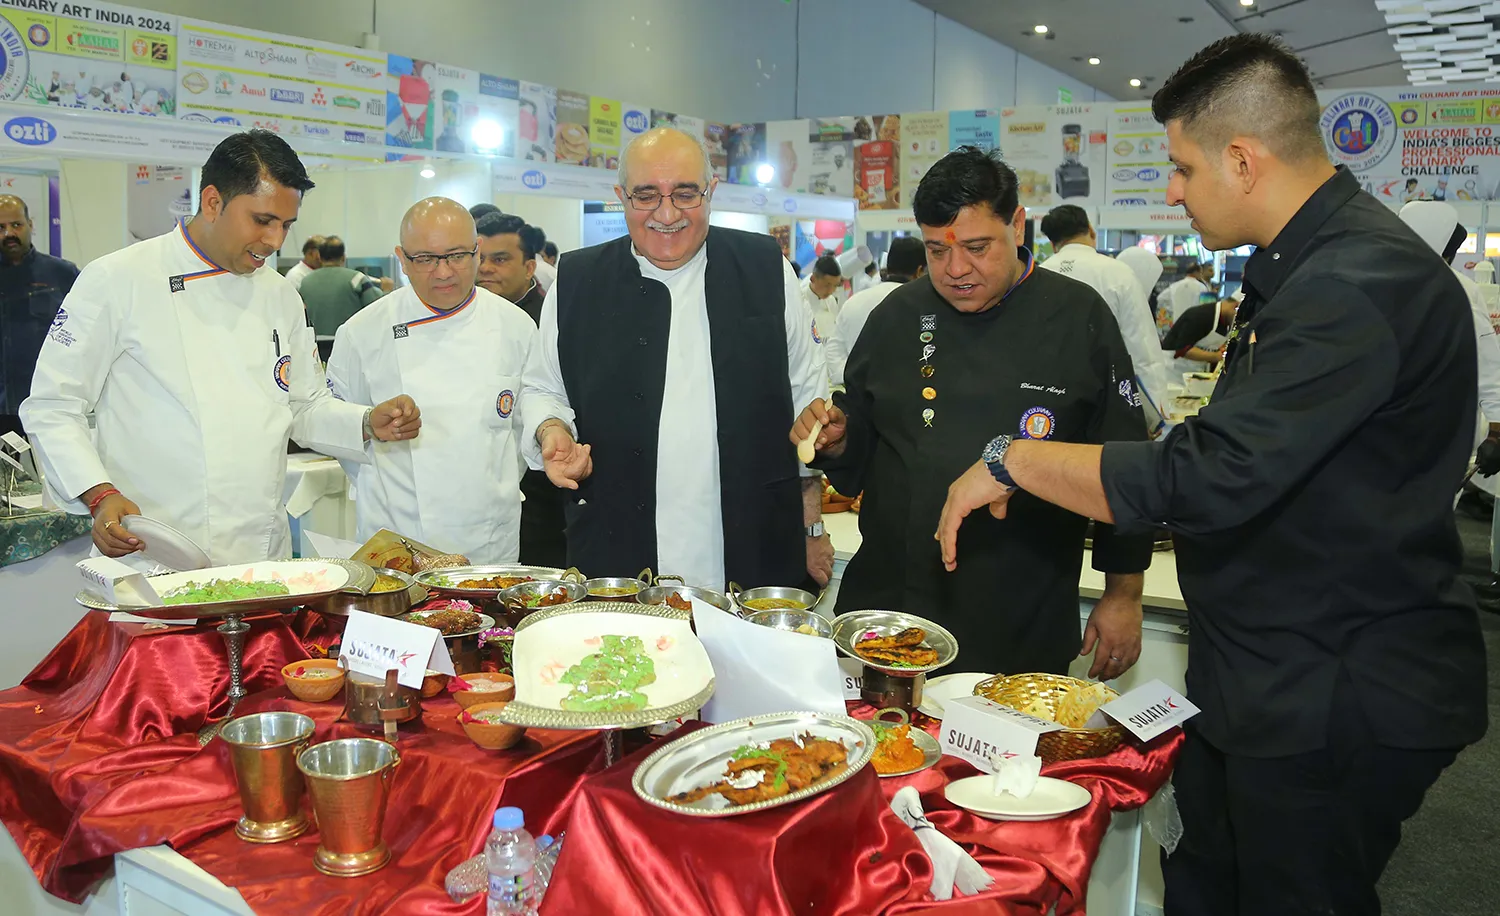 Culinary Art India kicks off at AAHAR